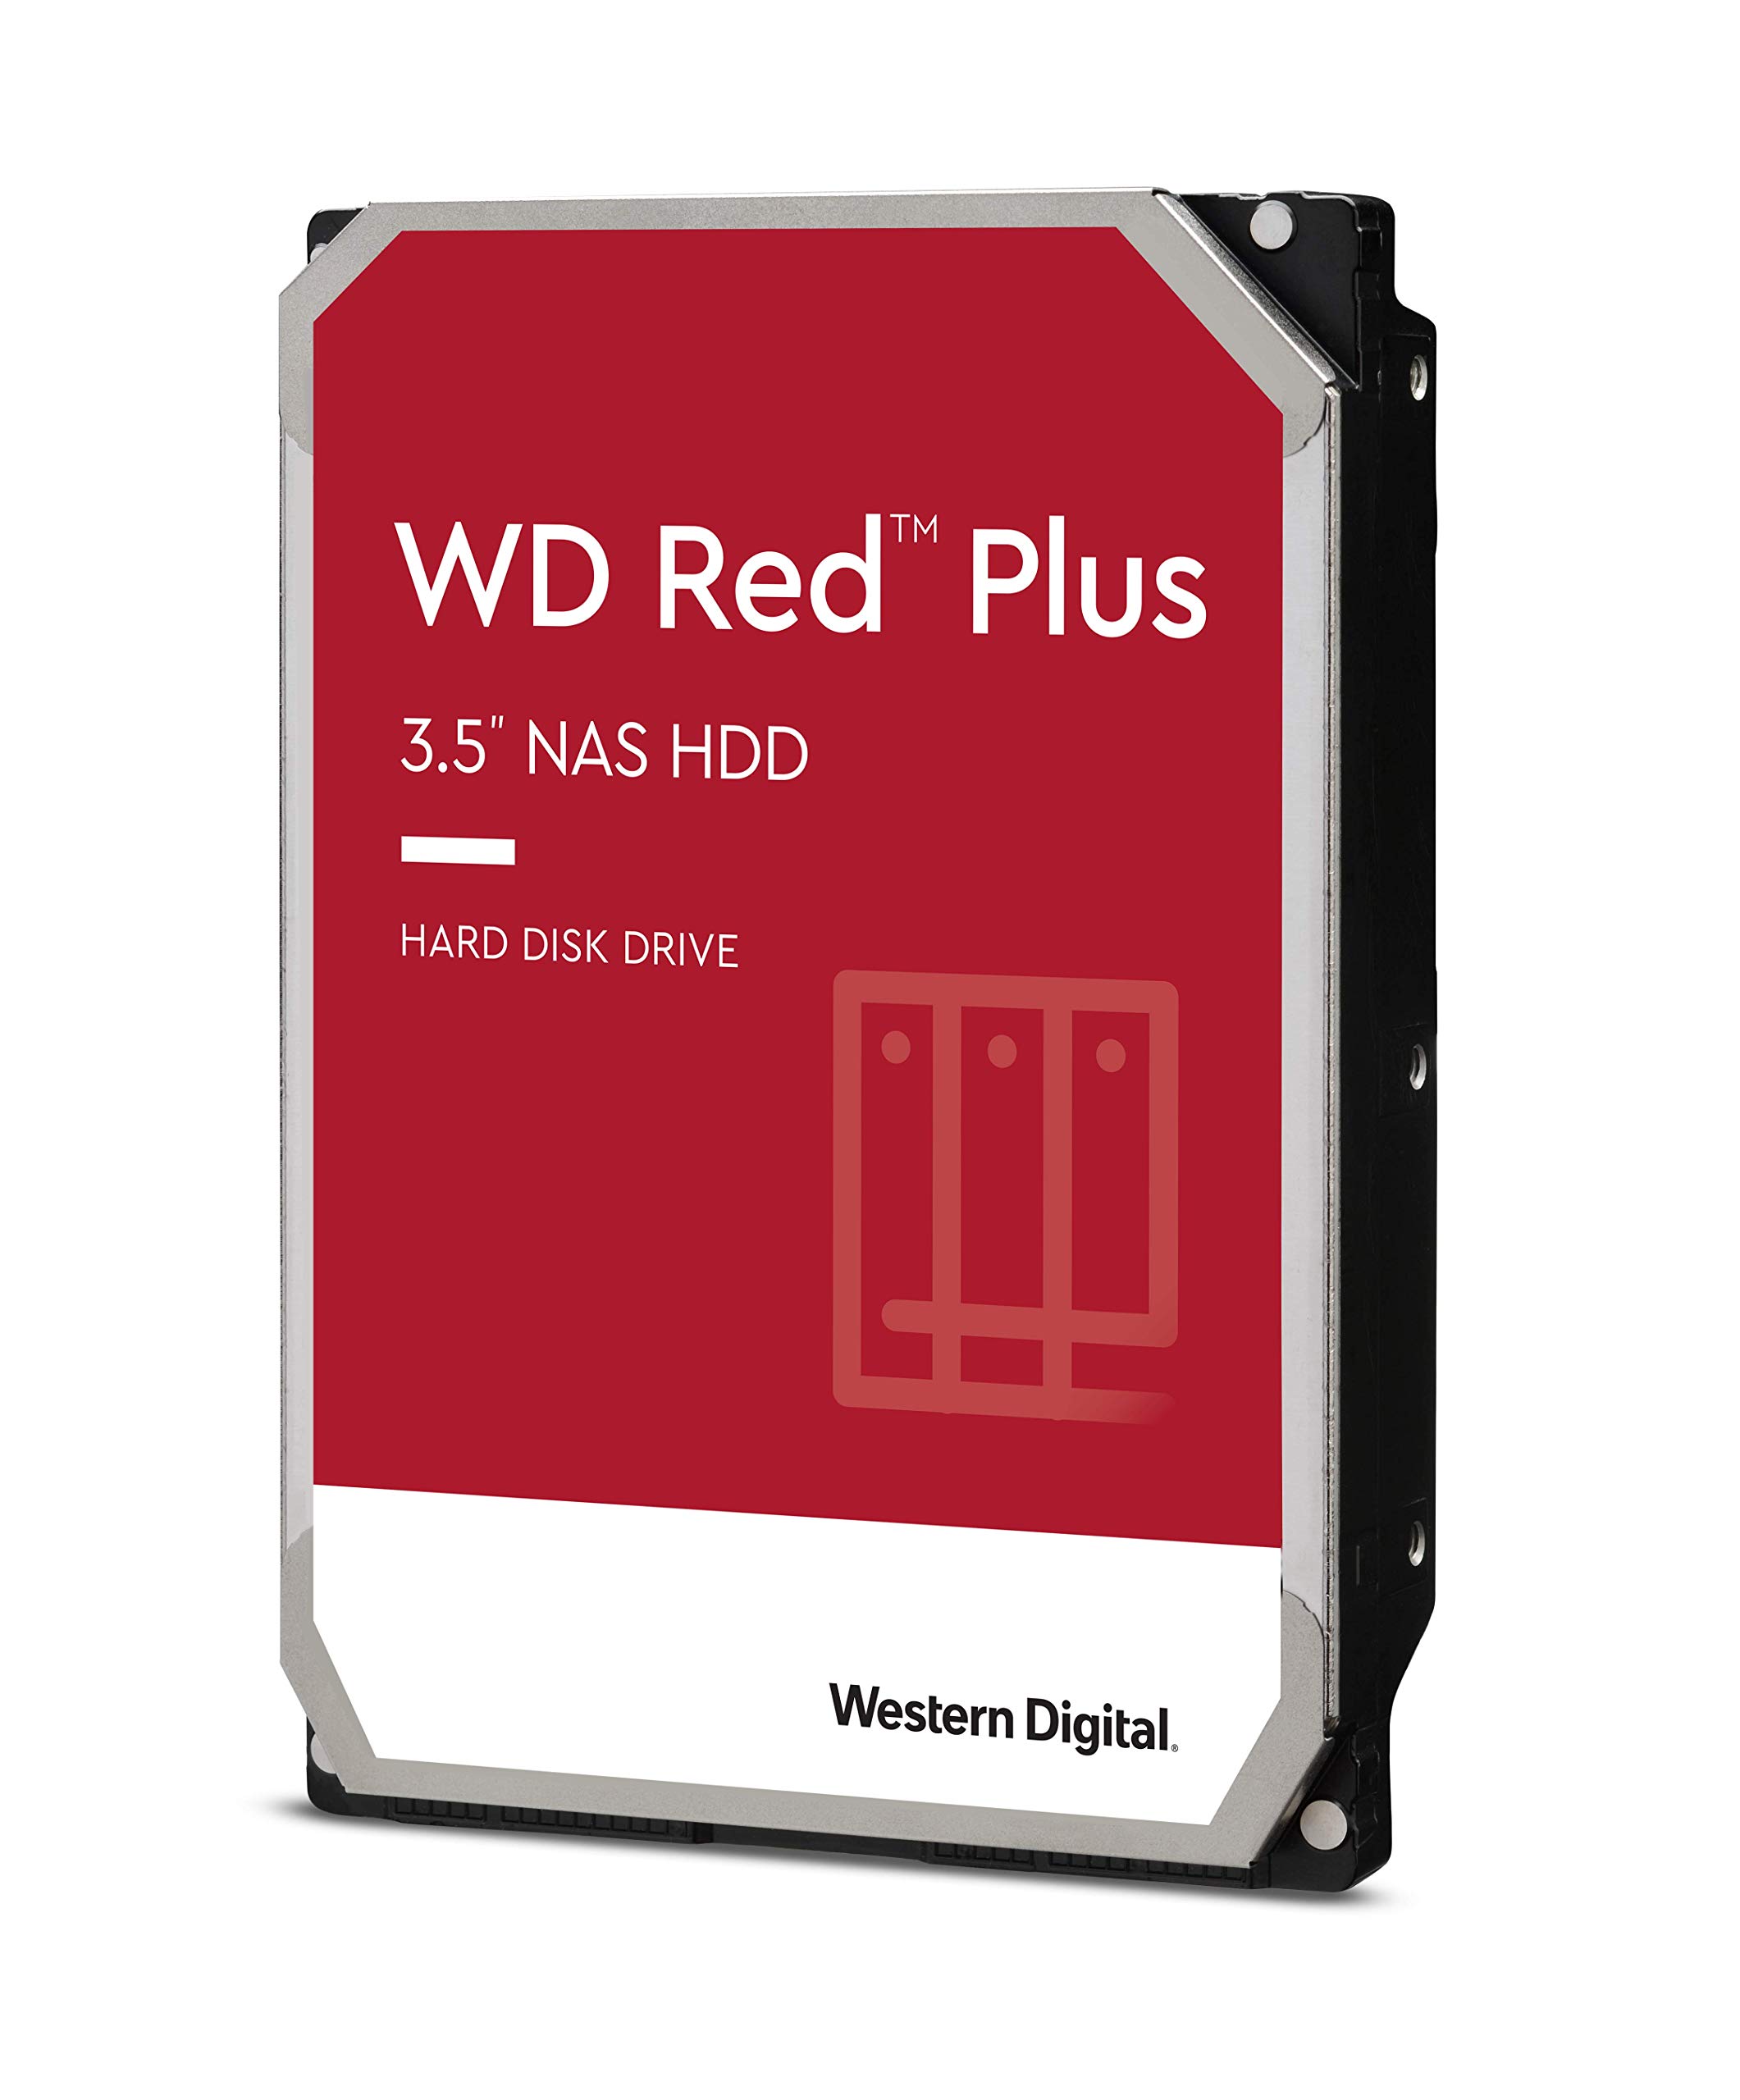 Western Digital 3TB WD Red Plus NAS Internal Hard Drive HDD - 5400 RPM, SATA 6 Gb/s, CMR, 256 MB Cache, 3.5